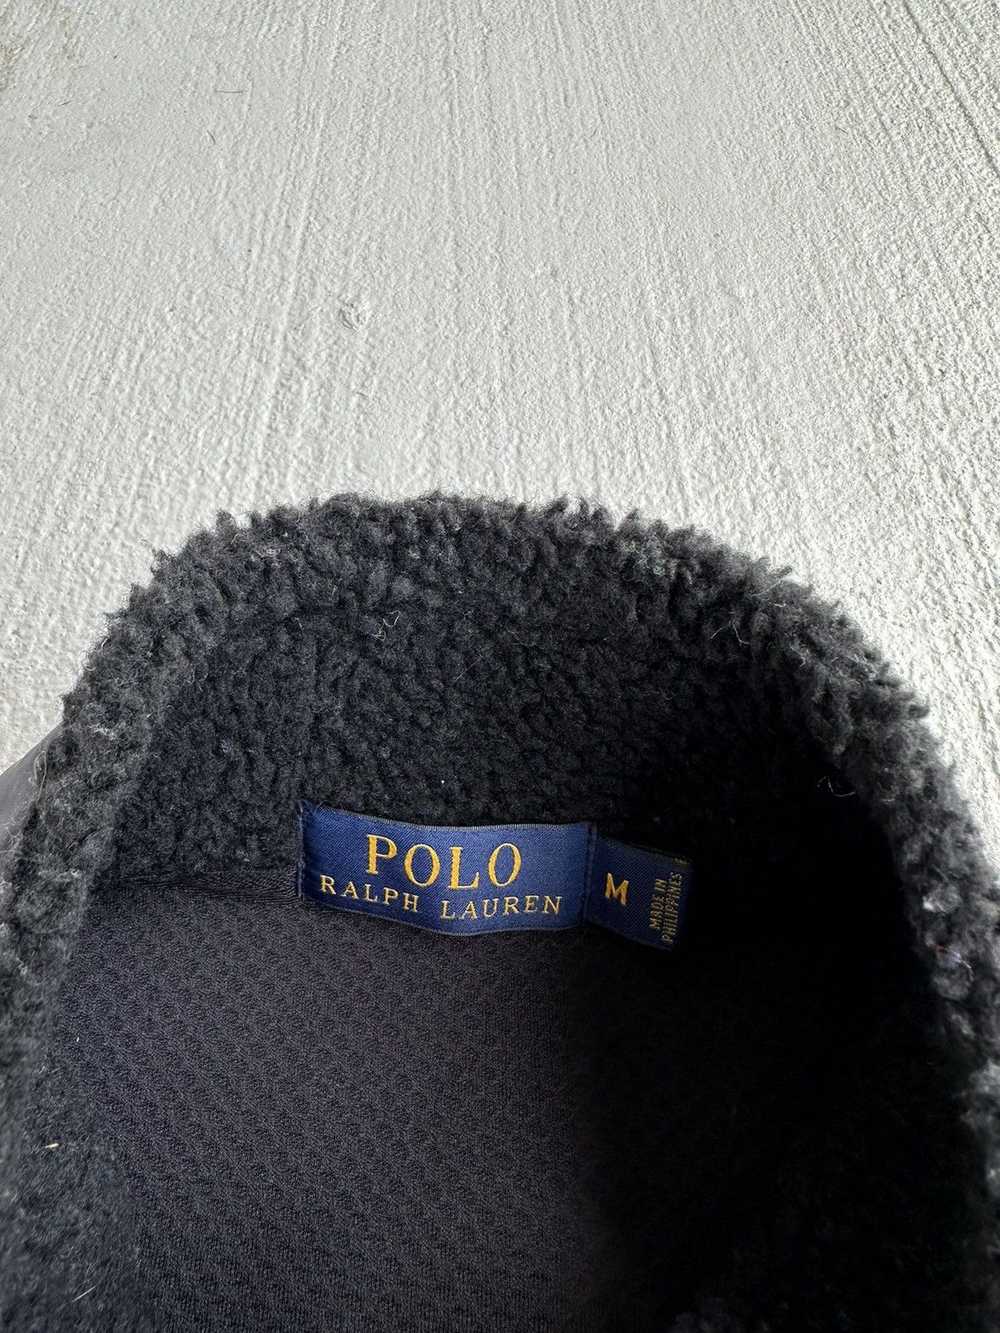 Polo Ralph Lauren Polo Ralph Lauren Fleece - image 4